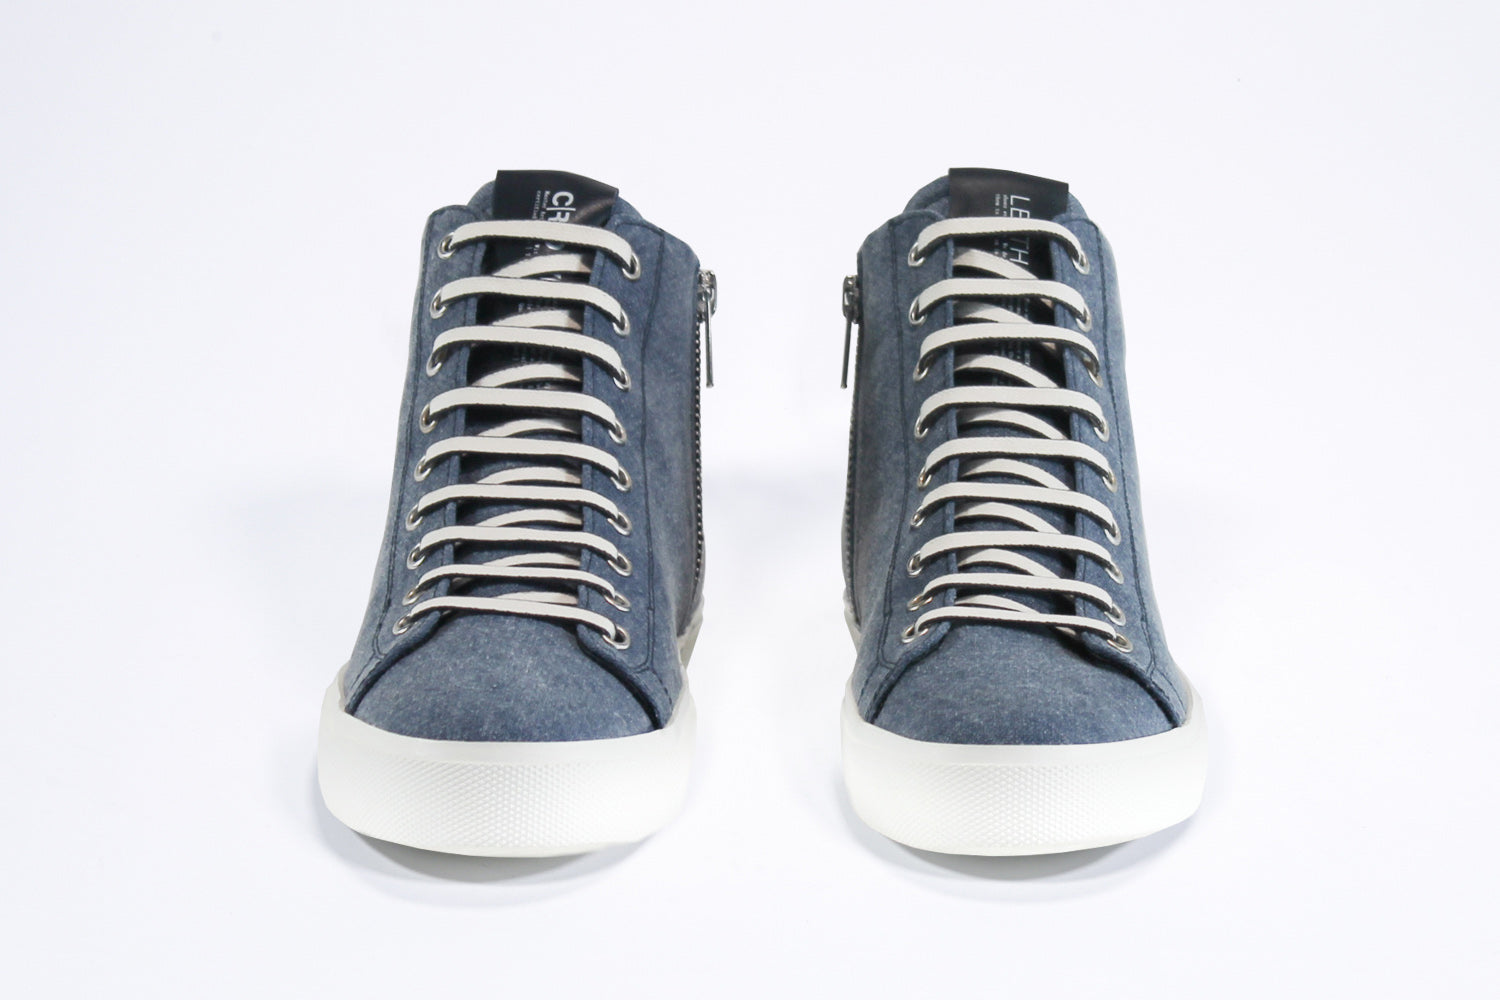 Vorderansicht des Mid-Tops sneaker aus jeansblauem Canvas und Leder, mit Innenreißverschluss und weißer Sohle.